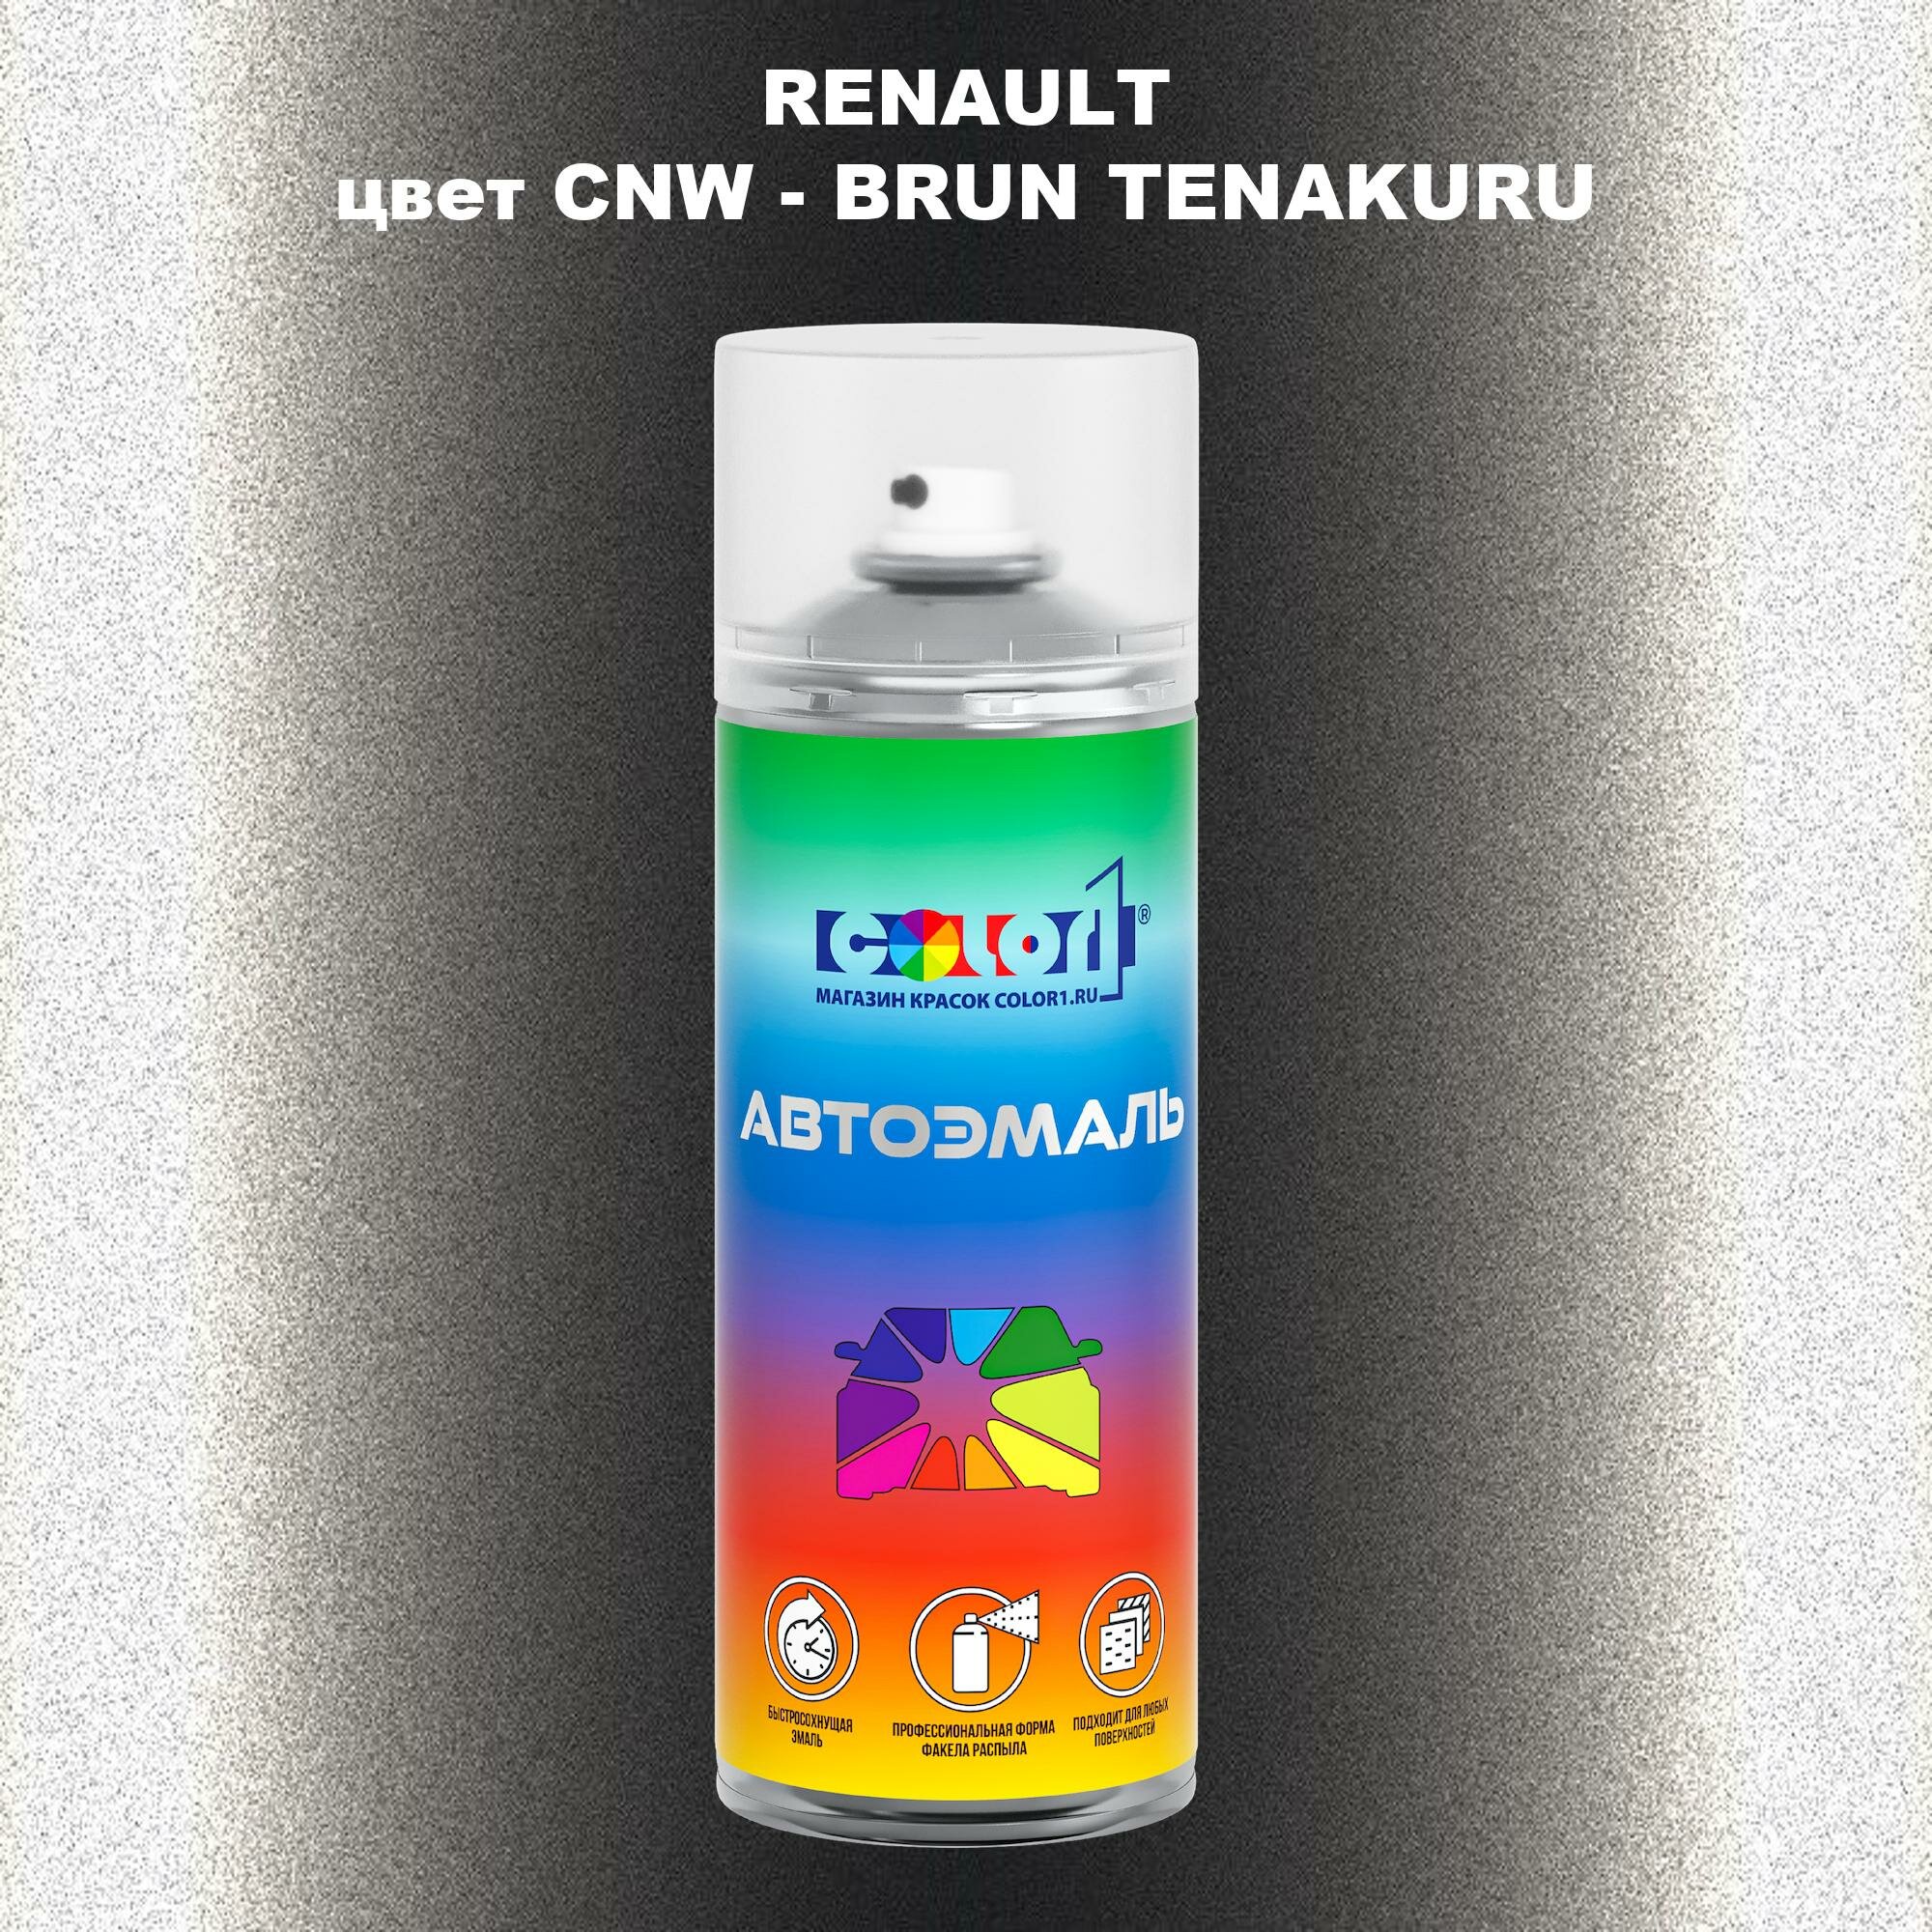 Аэрозольная краска COLOR1 для RENAULT, цвет CNW - BRUN TENAKURU